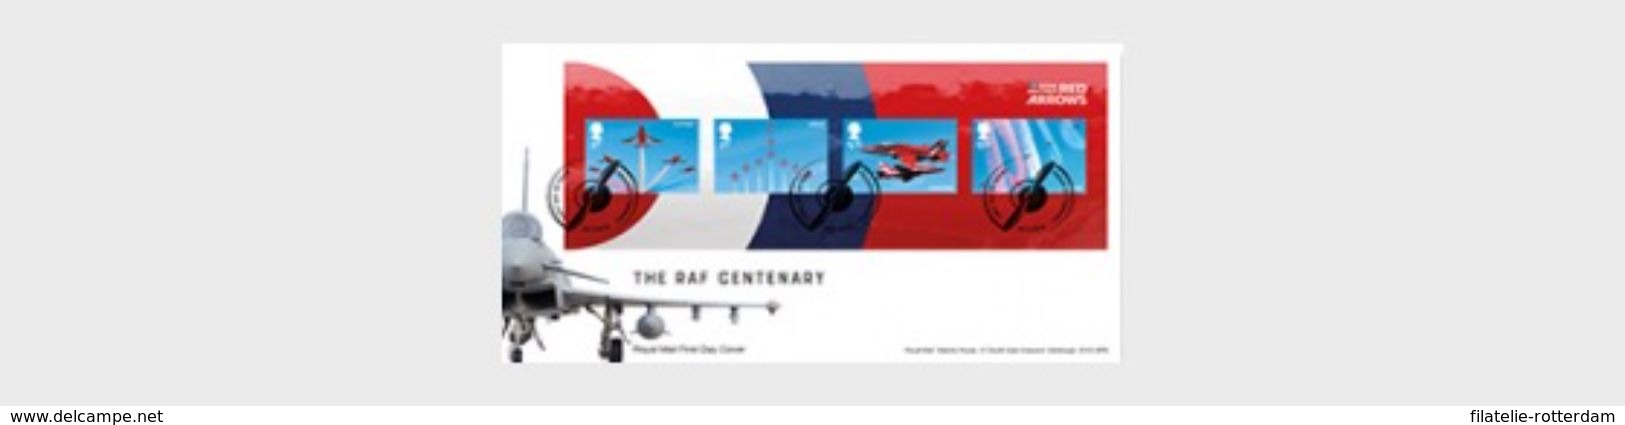 Groot-Brittannië / Great Britain - Postfris / MNH - FDC Sheet The RAF Centenary 2018 - Ongebruikt